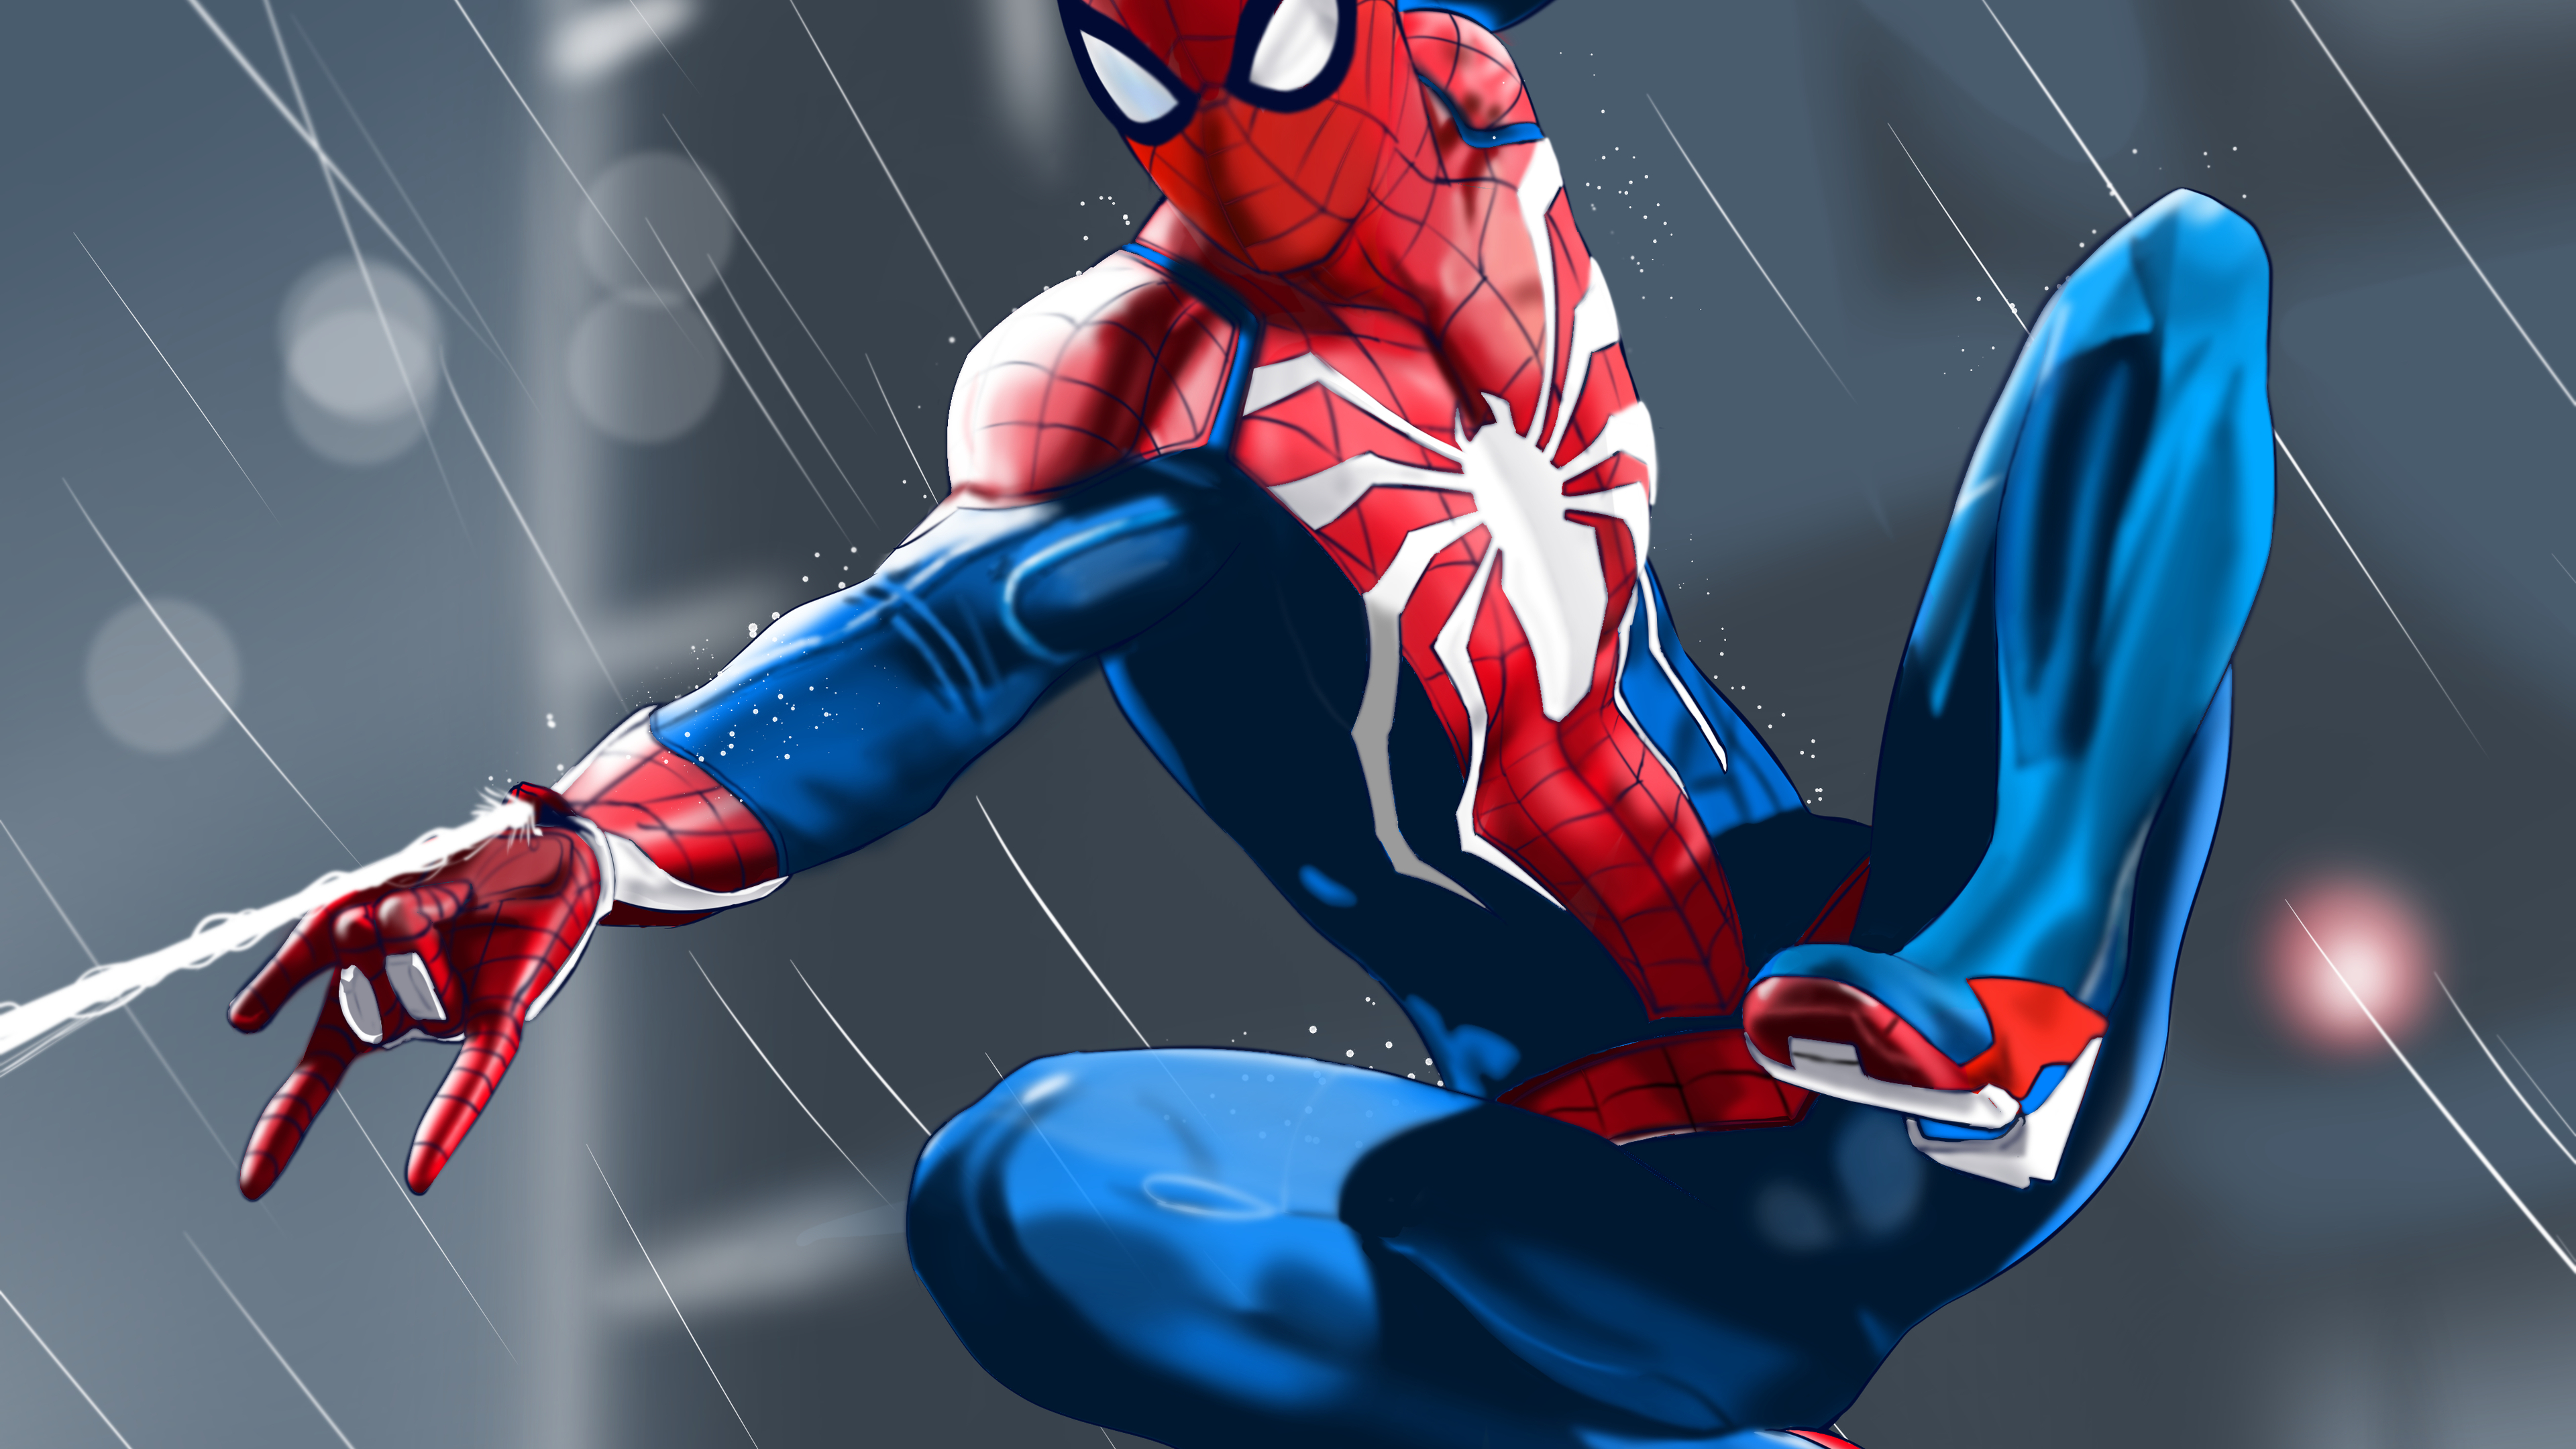  Spider Man  4k  superheroes wallpapers  spiderman  wallpapers  